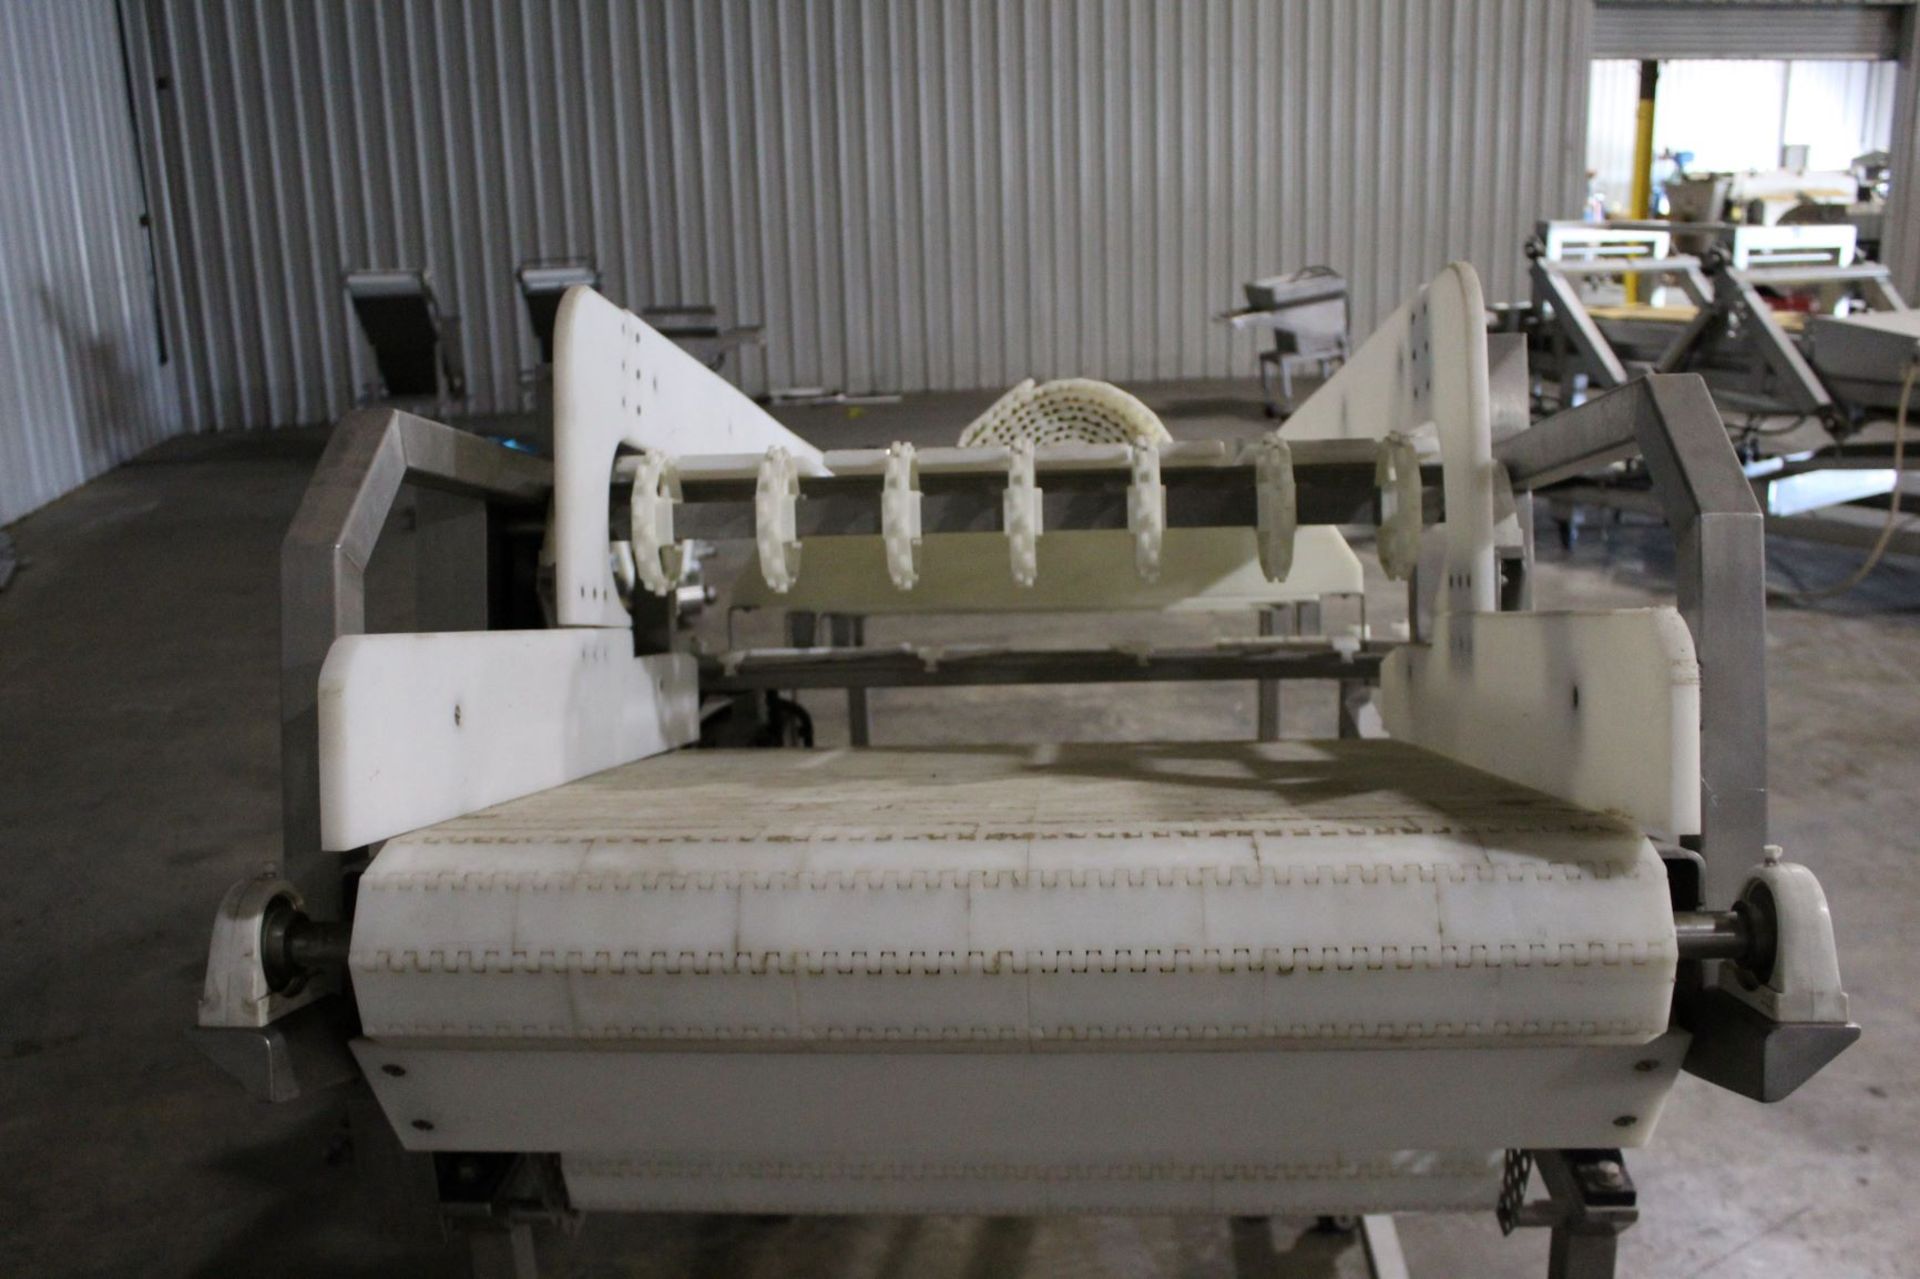 Frozen Block Conveyor, 34" wide x 140" long - Stamped 14052032 - Image 2 of 6